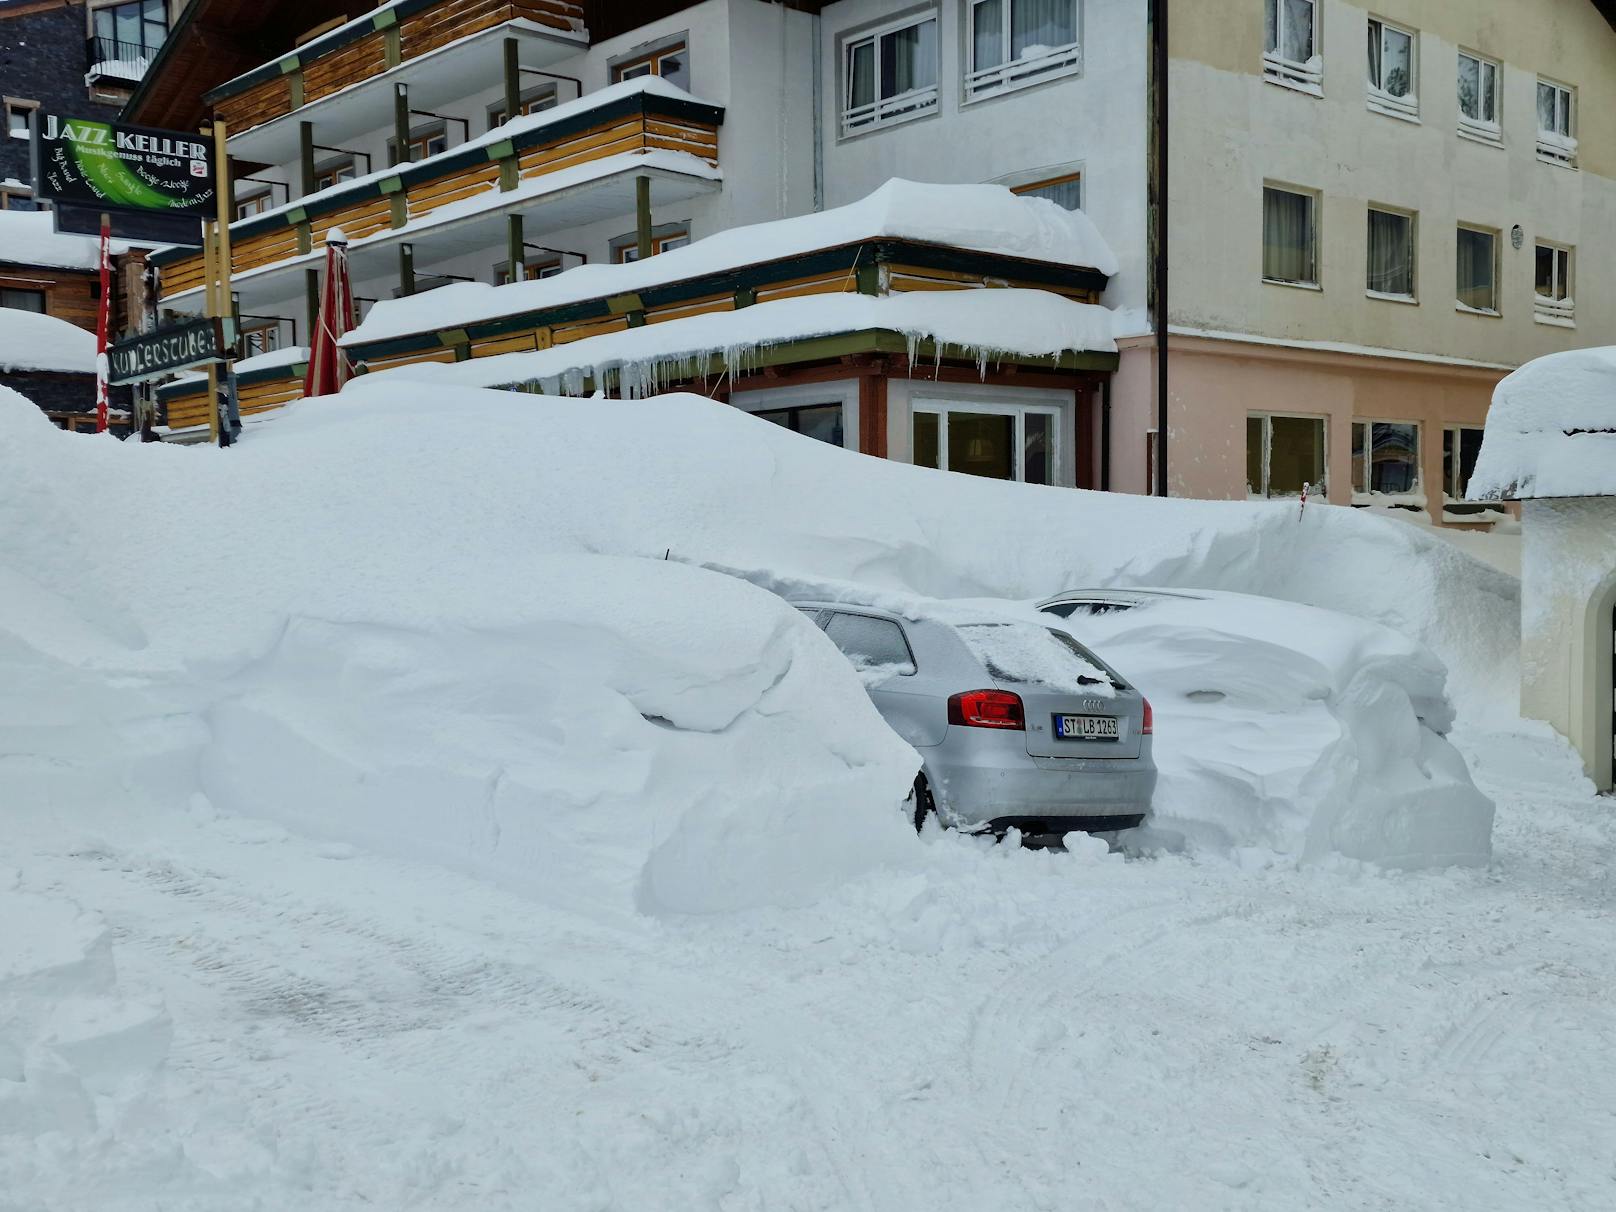 Die Schnee-Walze gepaart mit dem Orkan-Sturm sorgten in Obertauern am 3. Februar 2023 für massive Schneeverwehungen und "blizzardähnliche Verhältnisse".